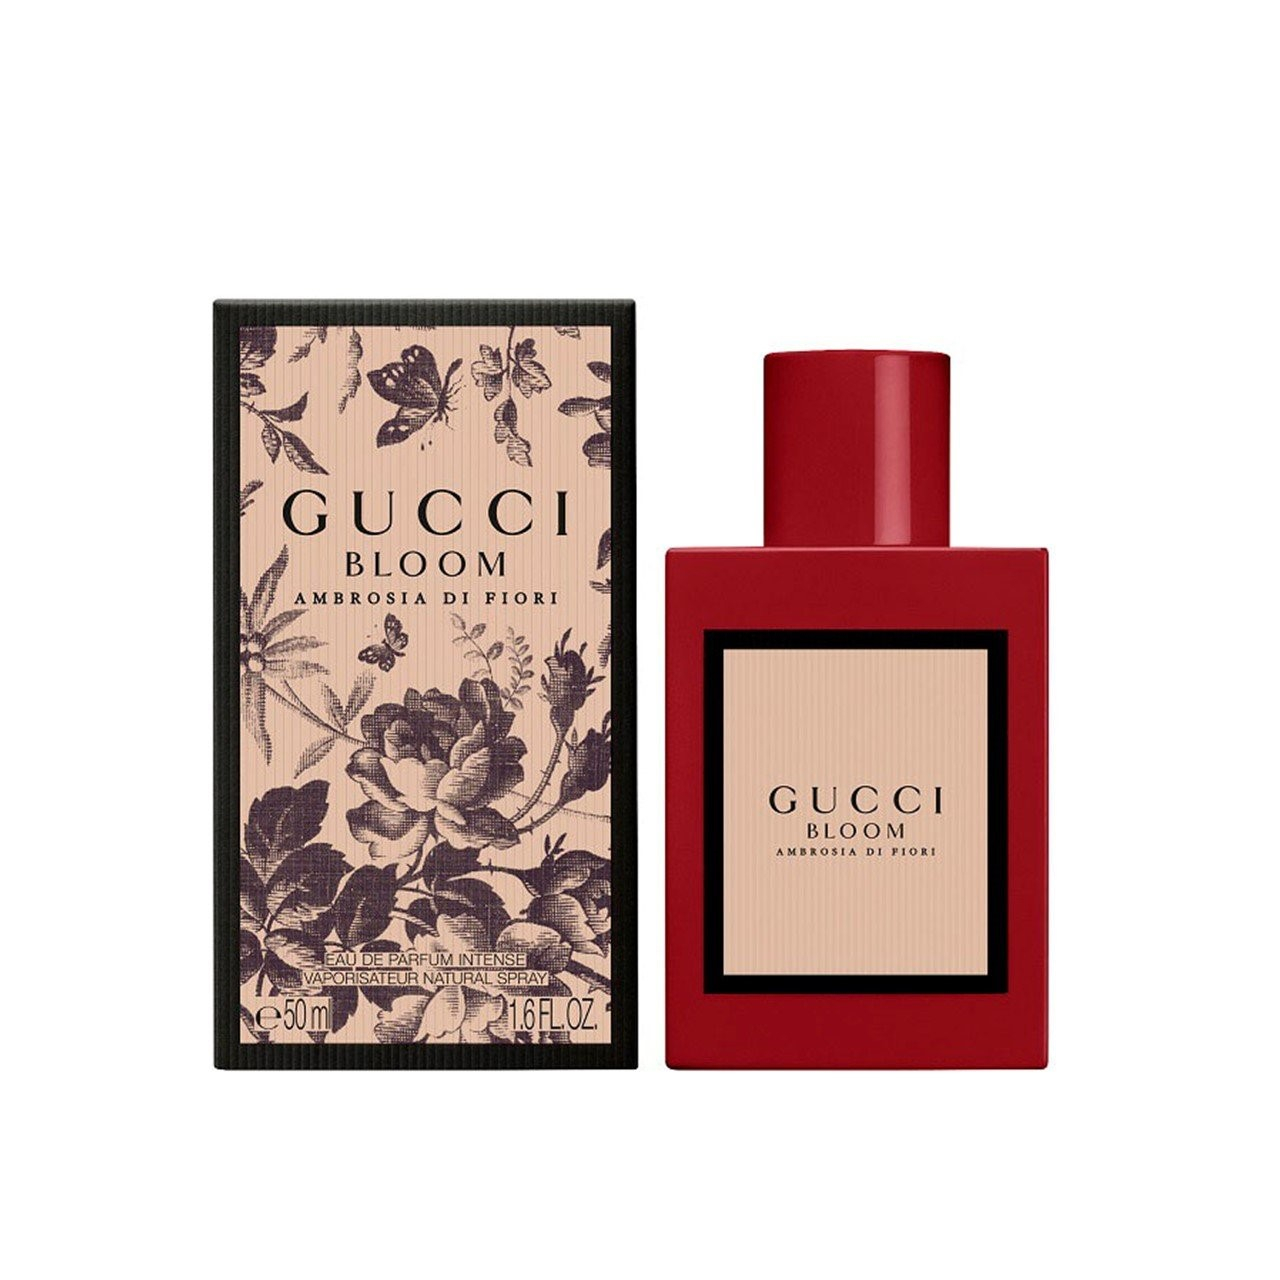 Buy Gucci Bloom Ambrosia Eau USA de · Fiori Intense Parfum Di